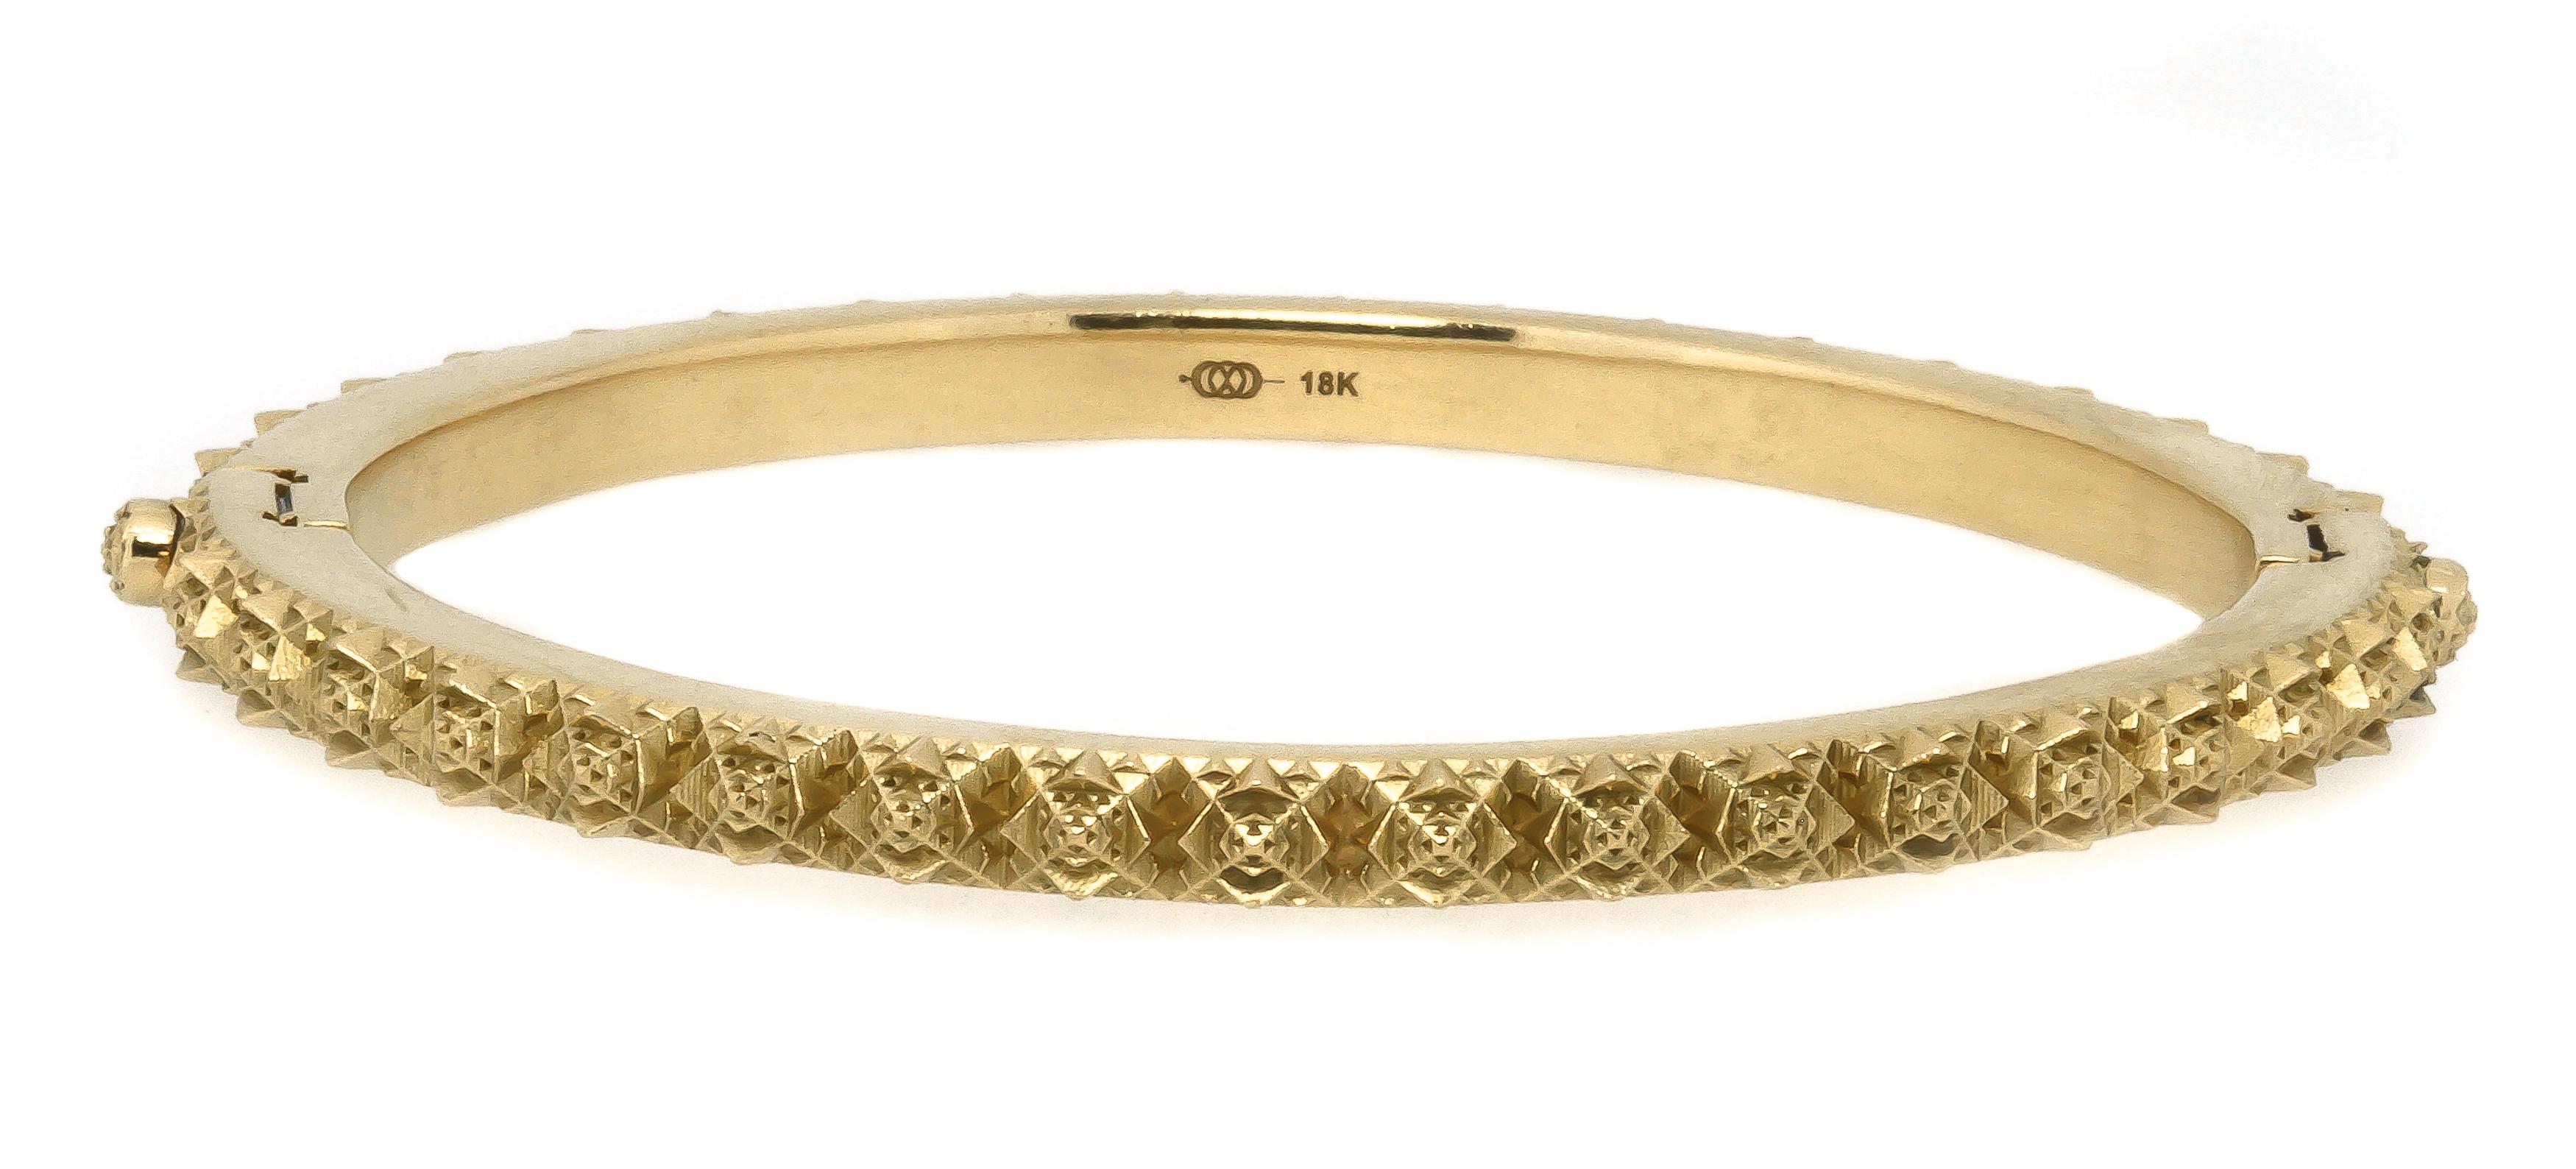 18K Gold Thoscene Bracelet by John Brevard For Sale 7